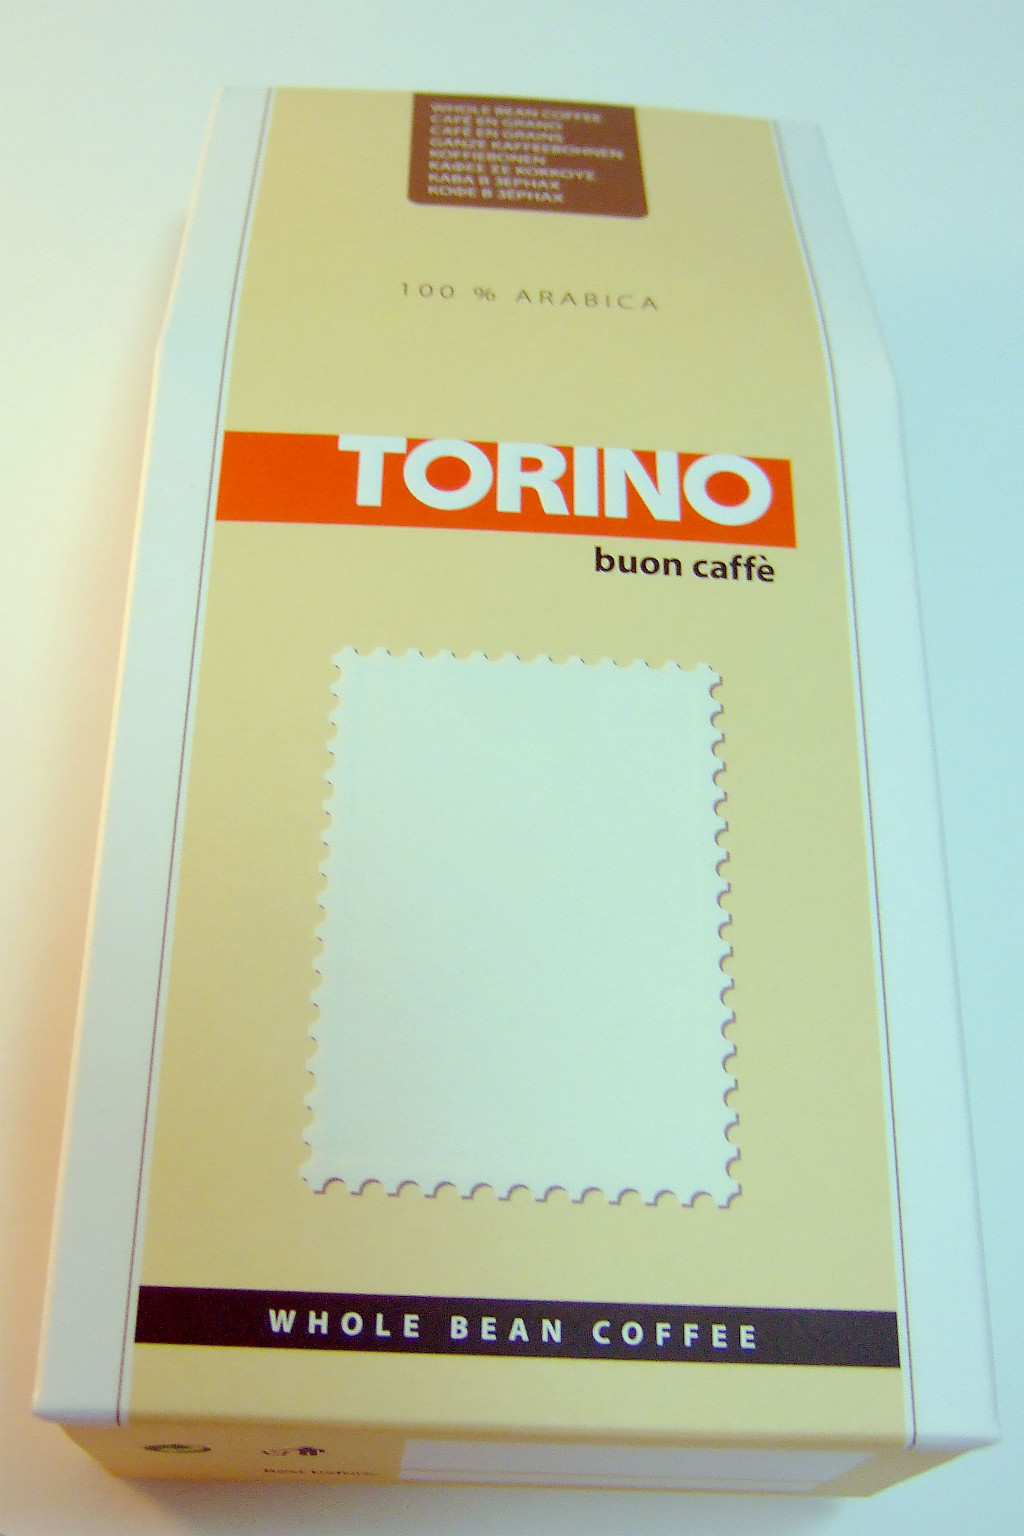 Друк коробів «Torino». Поліграфія друкарні Макрос, виготовлення коробів, специфікація 969995-1